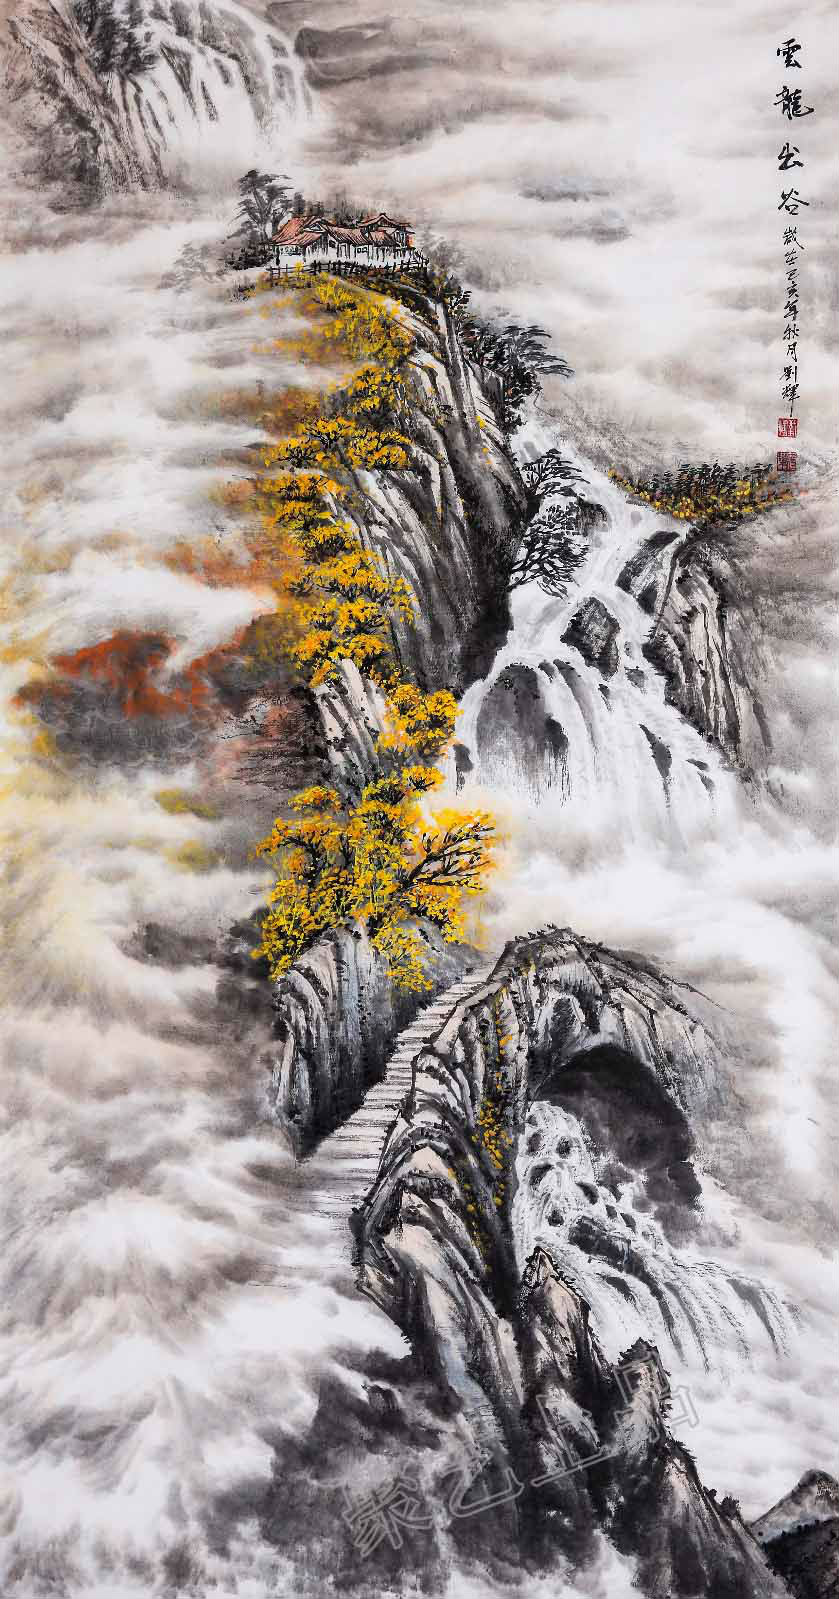 画家刘辉山水画欣赏 每有新作展示 都令人眼前一亮